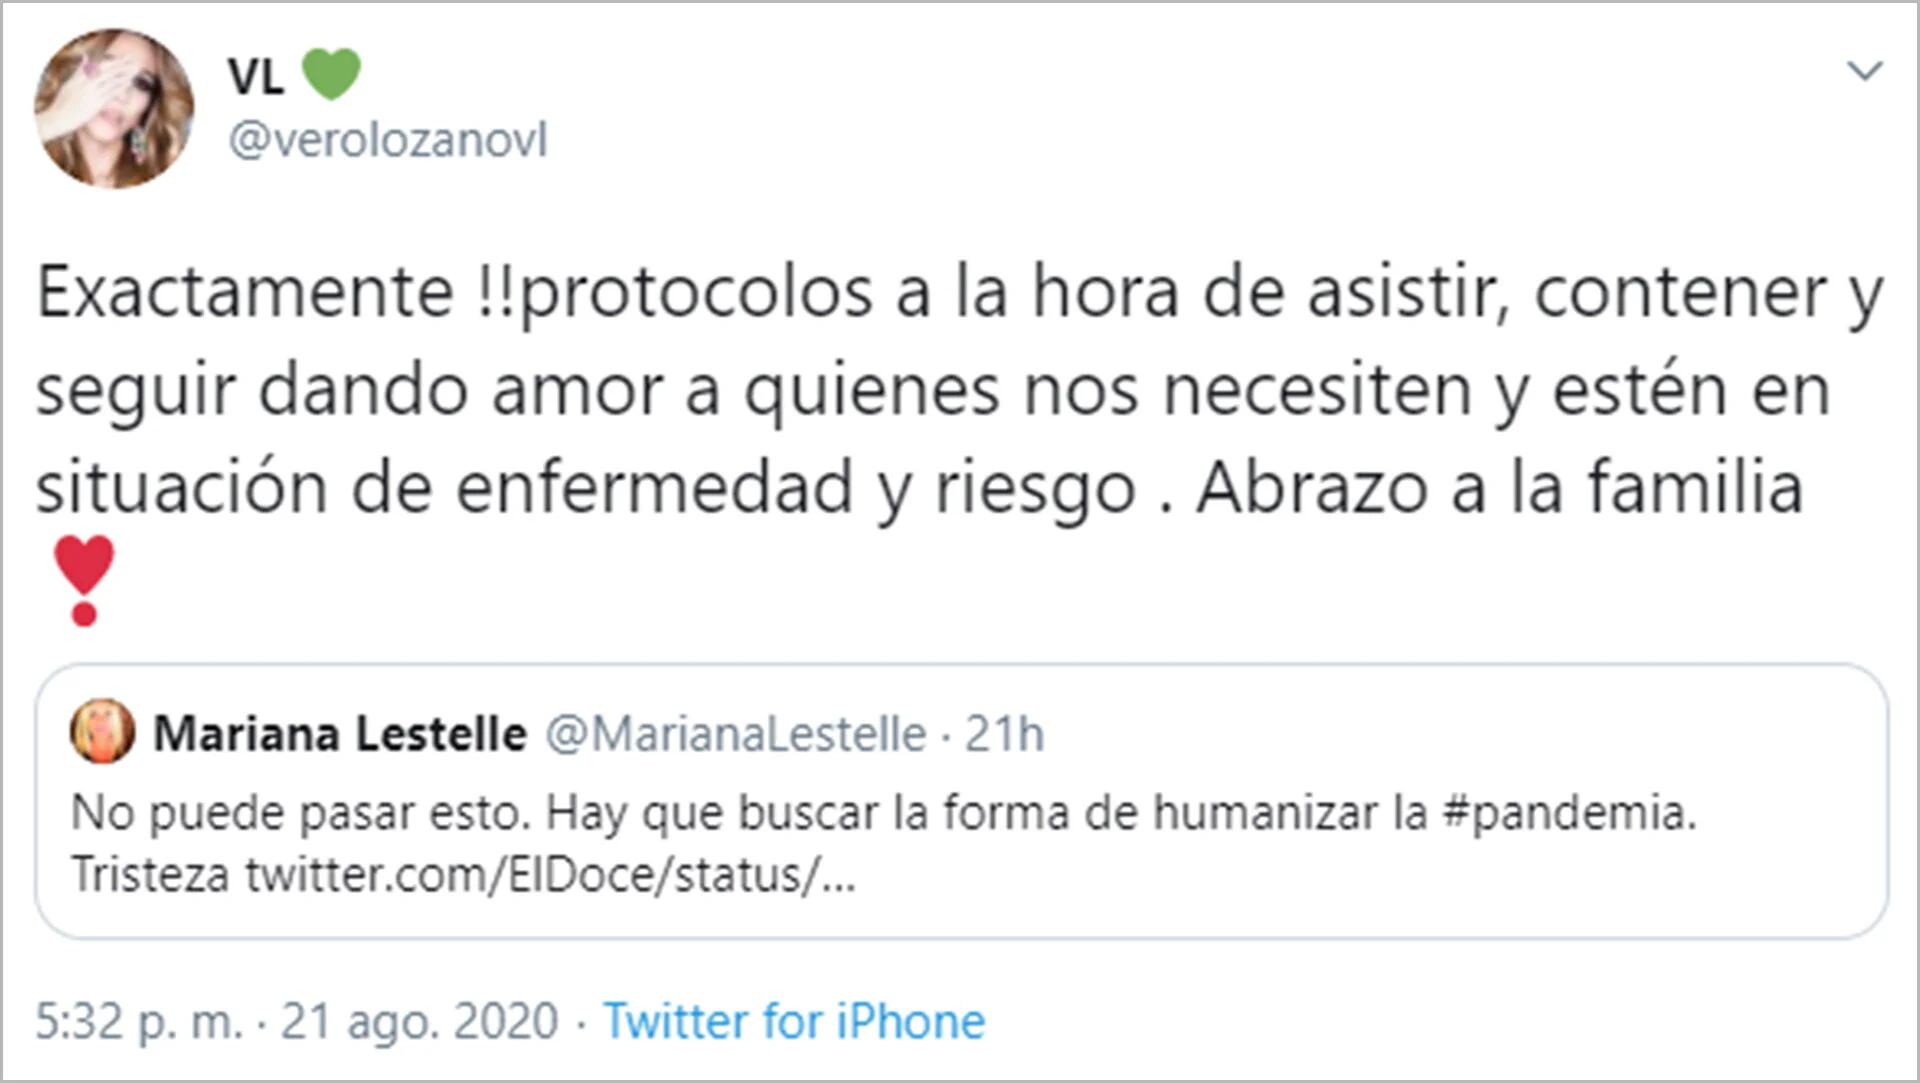 El tuit de Veronica Lozano, en respuesta Mariana Lestelle